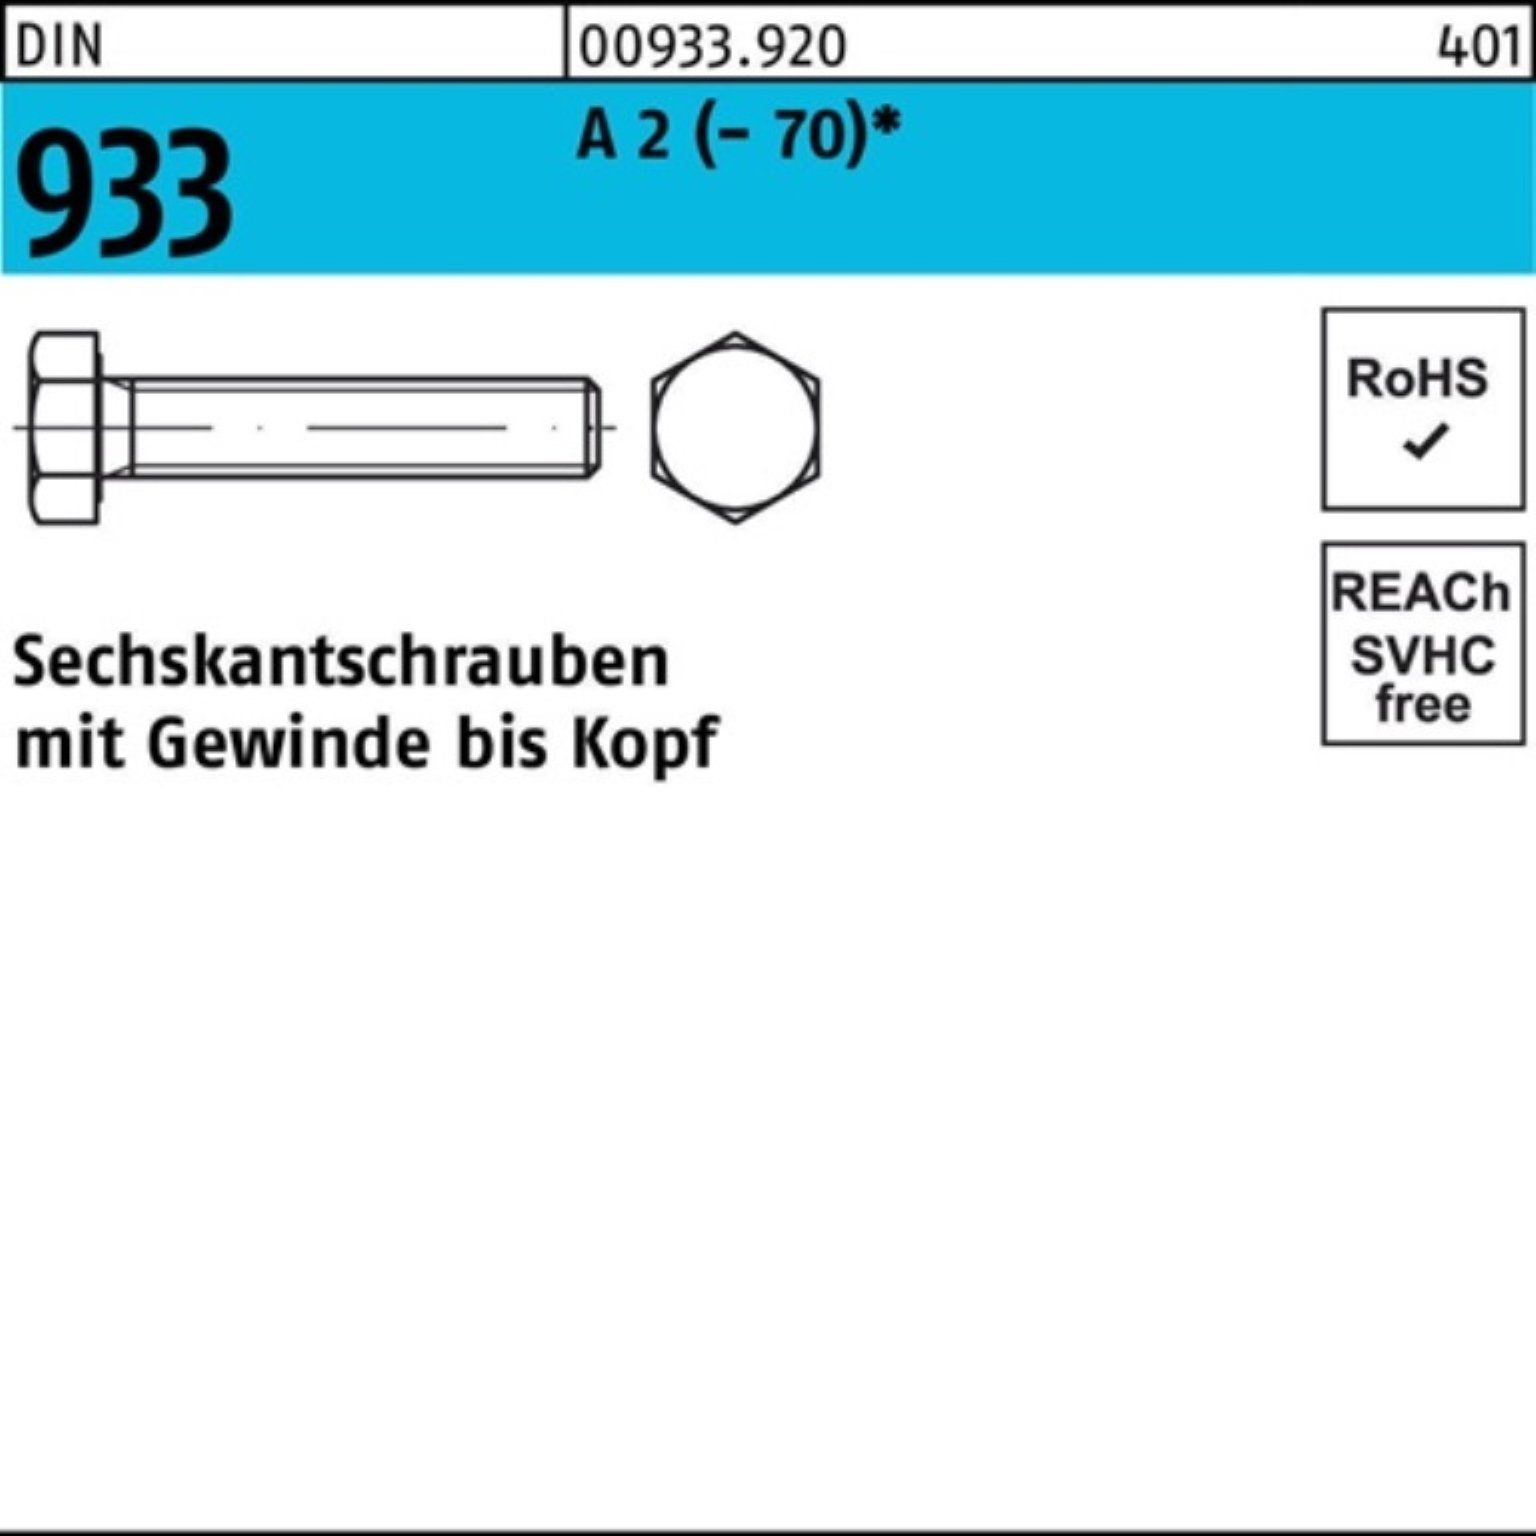 VG Sechskantschraube 933 (70) 2 200 A Sechskantschraube 100er D DIN Stück M24x 1 Pack Reyher